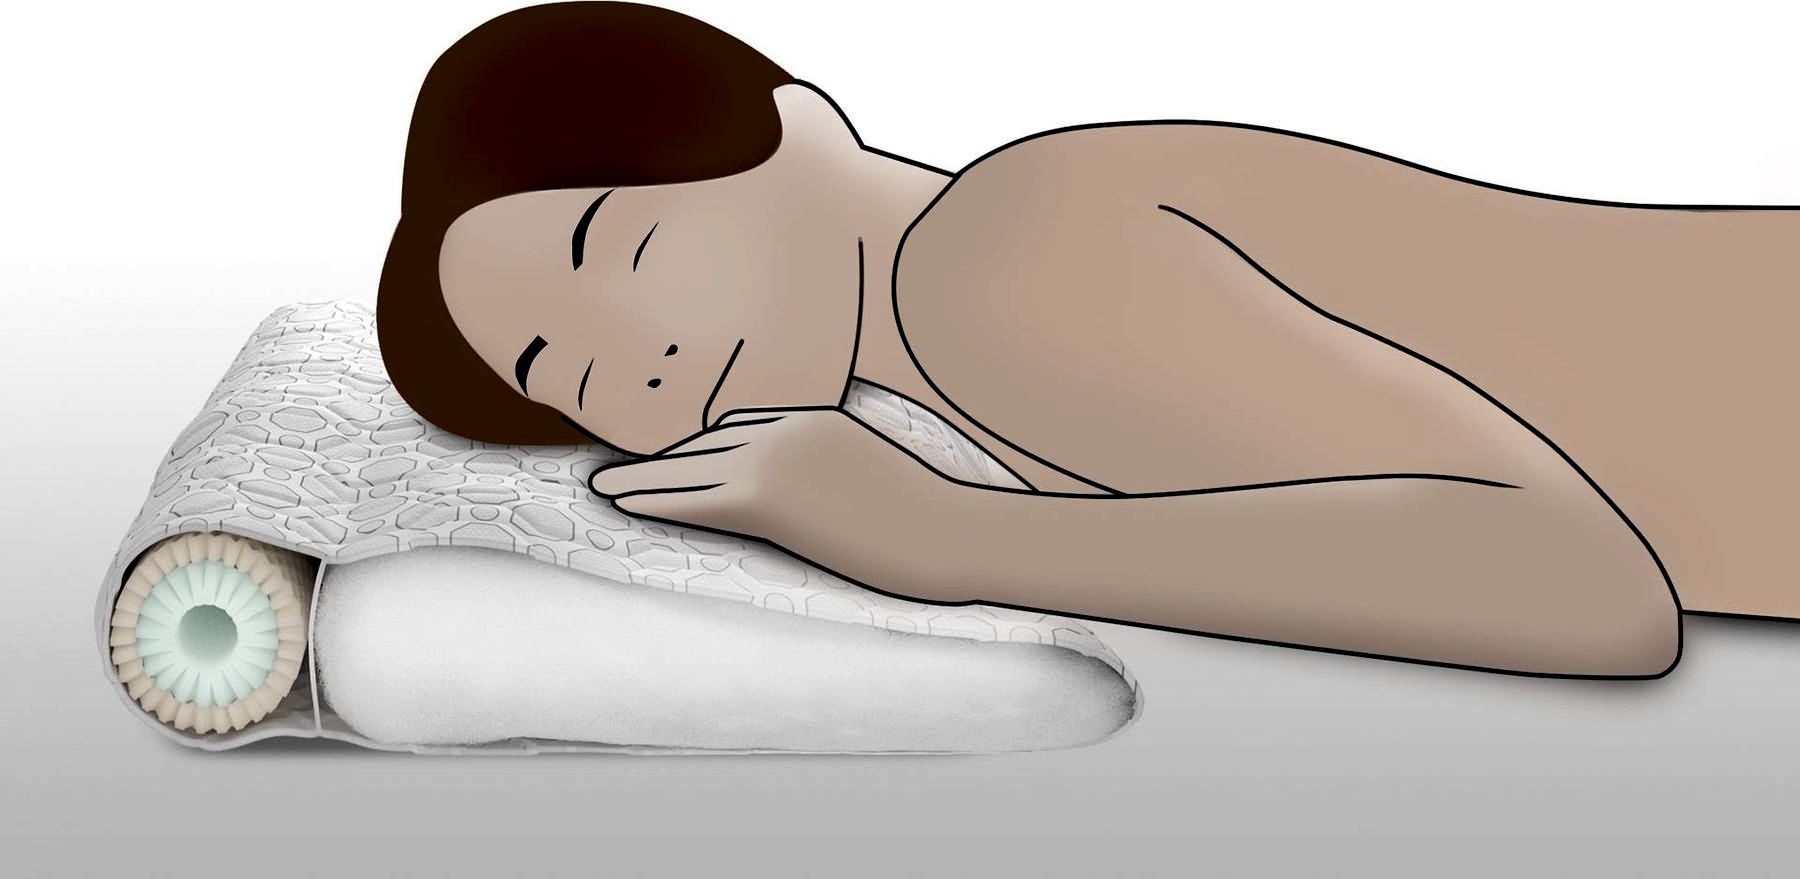 Как правильно спать на анатомической подушке фото